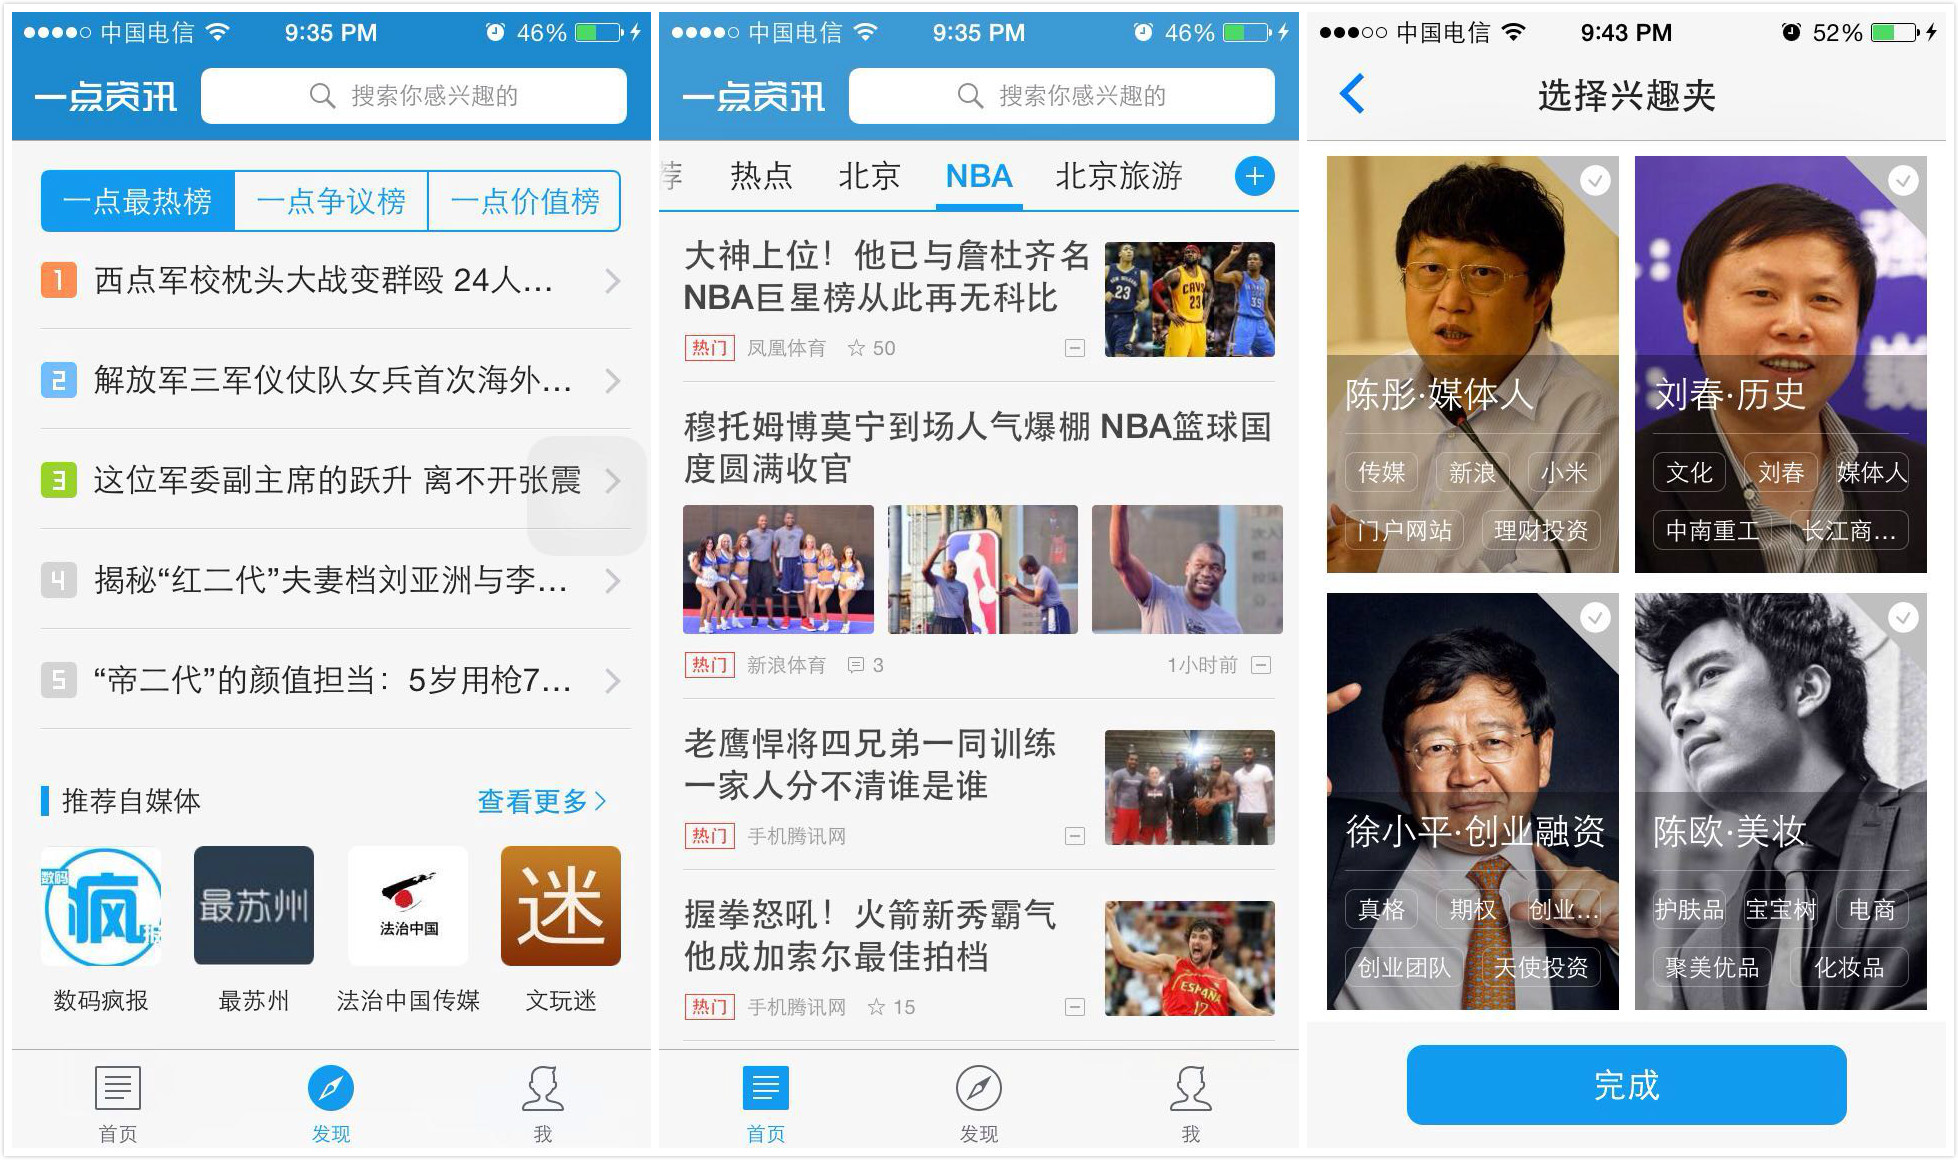 凤凰新闻手机j版app下载凤凰新闻并安装到桌面